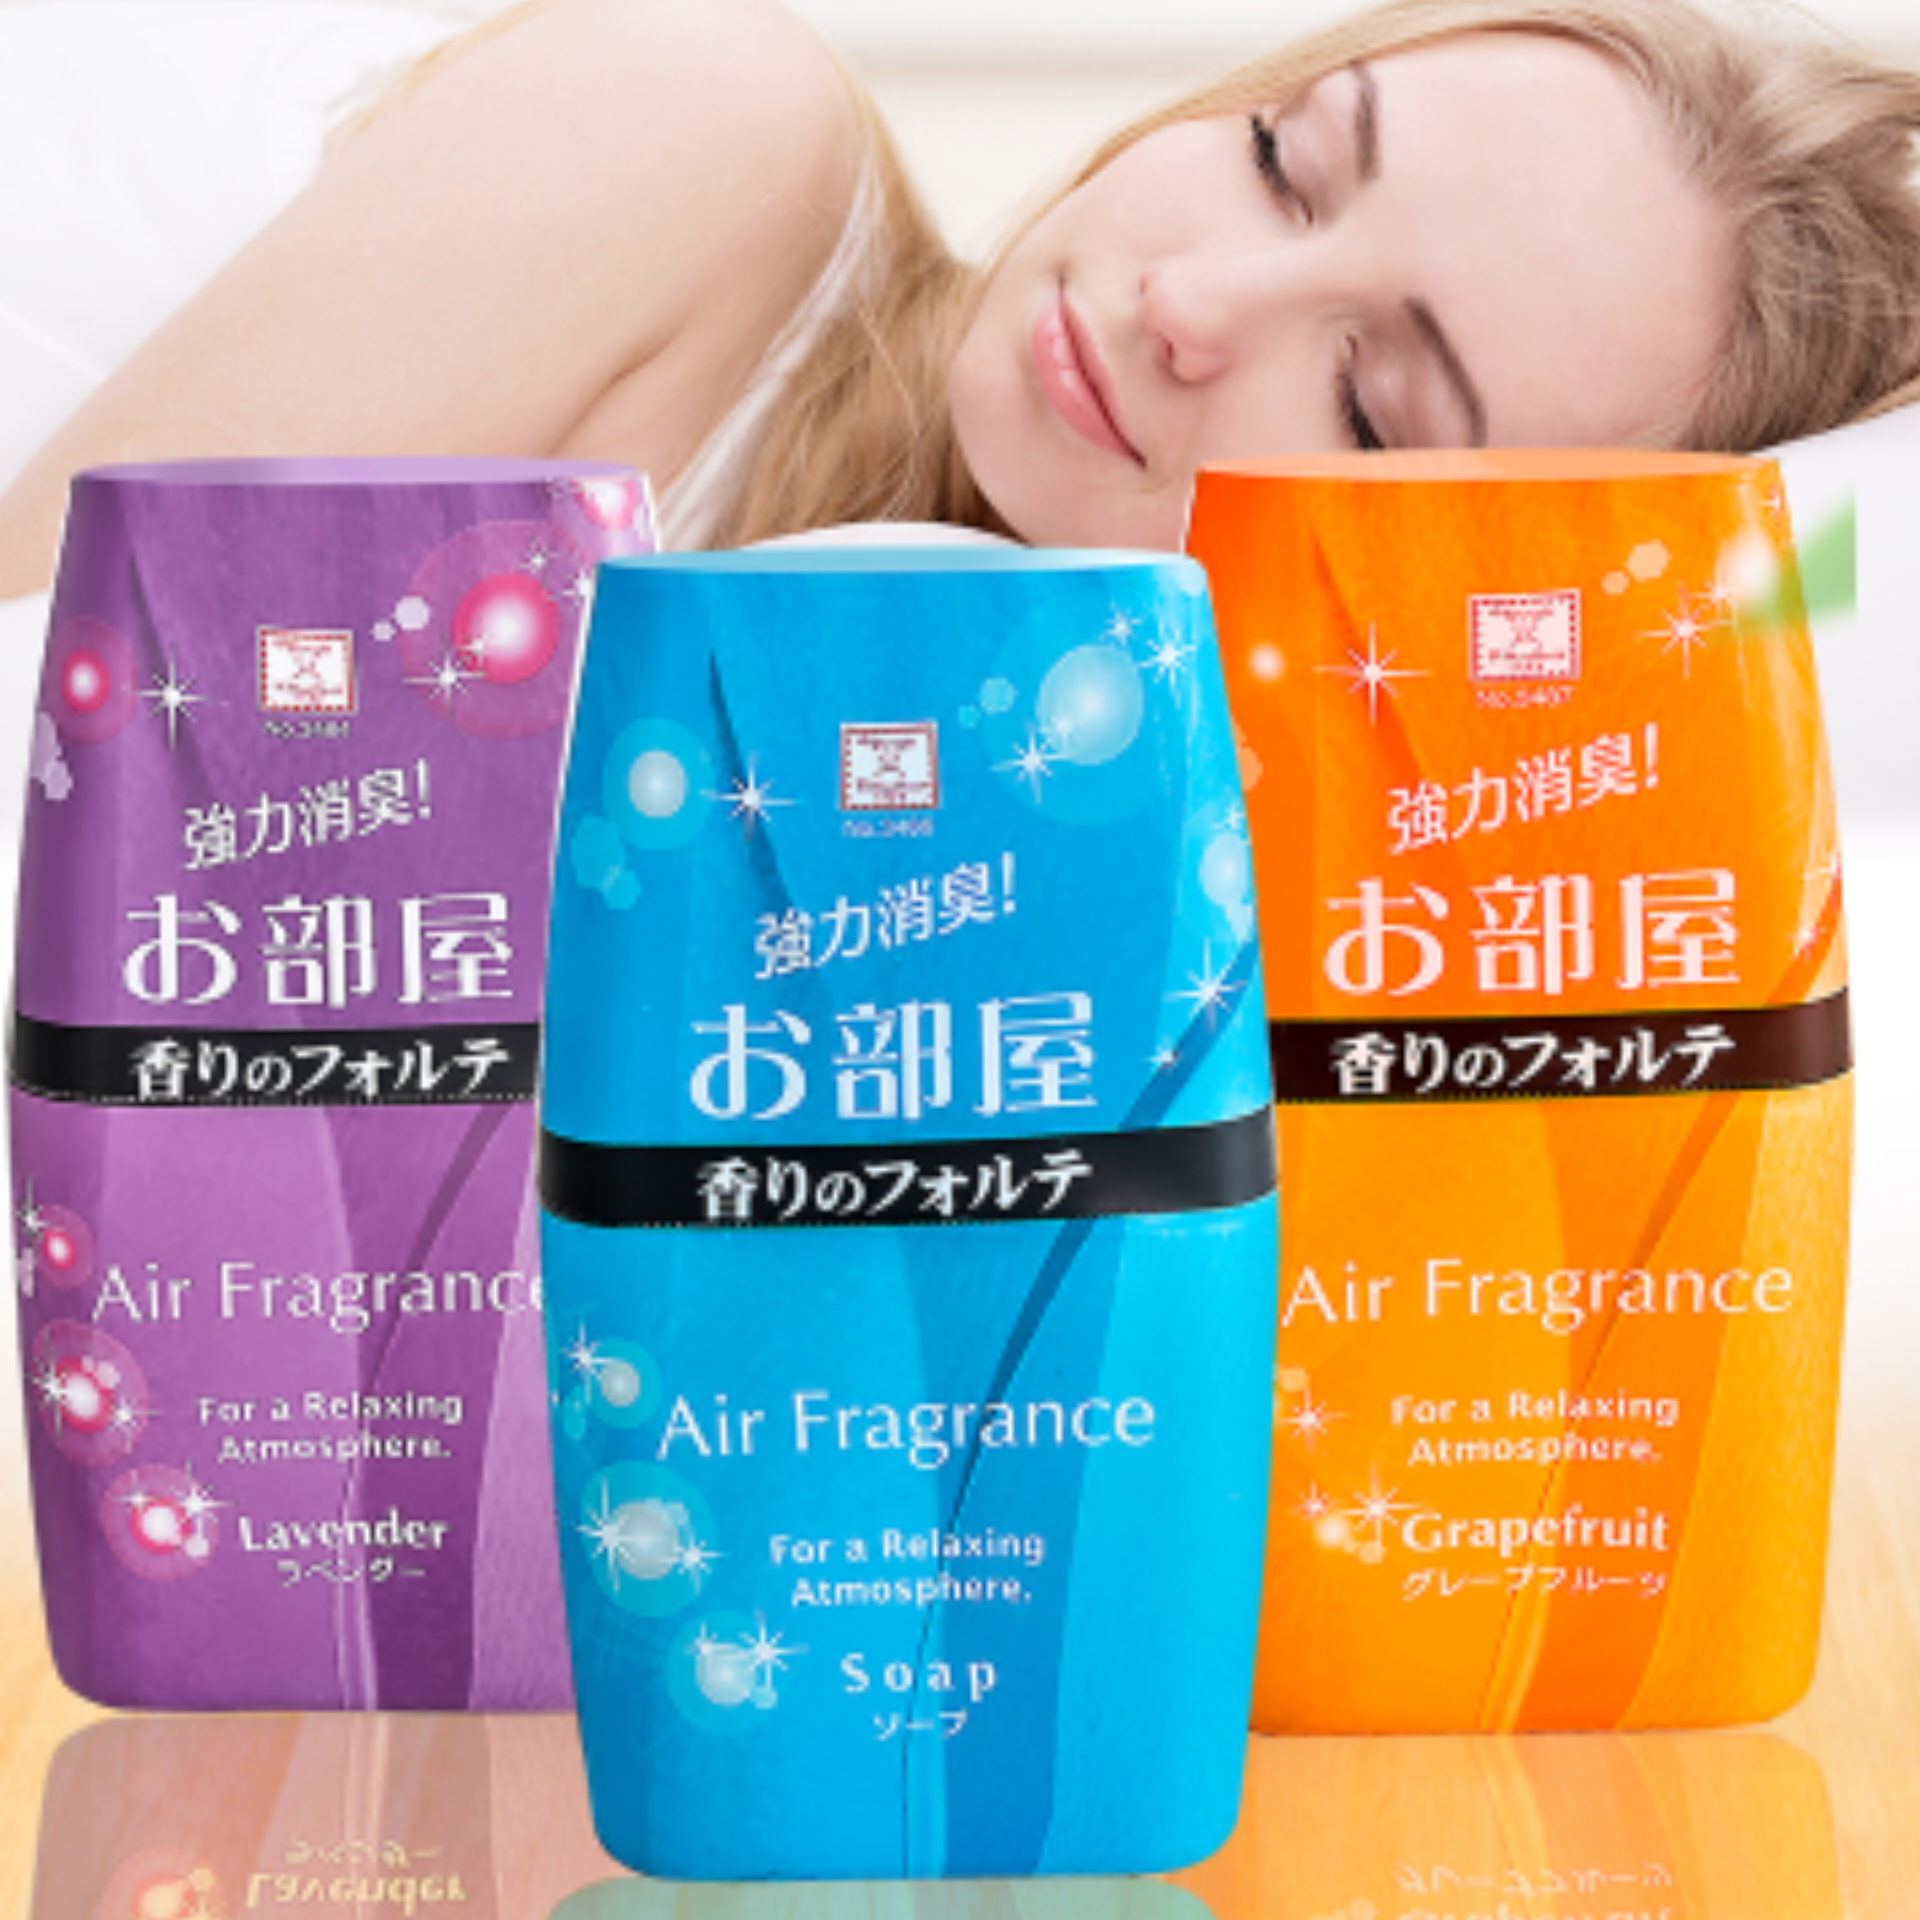 Combo 2 hộp khử mùi làm thơm phòng Air Fragrance hương bưởi 200ml nội địa Nhật Bản